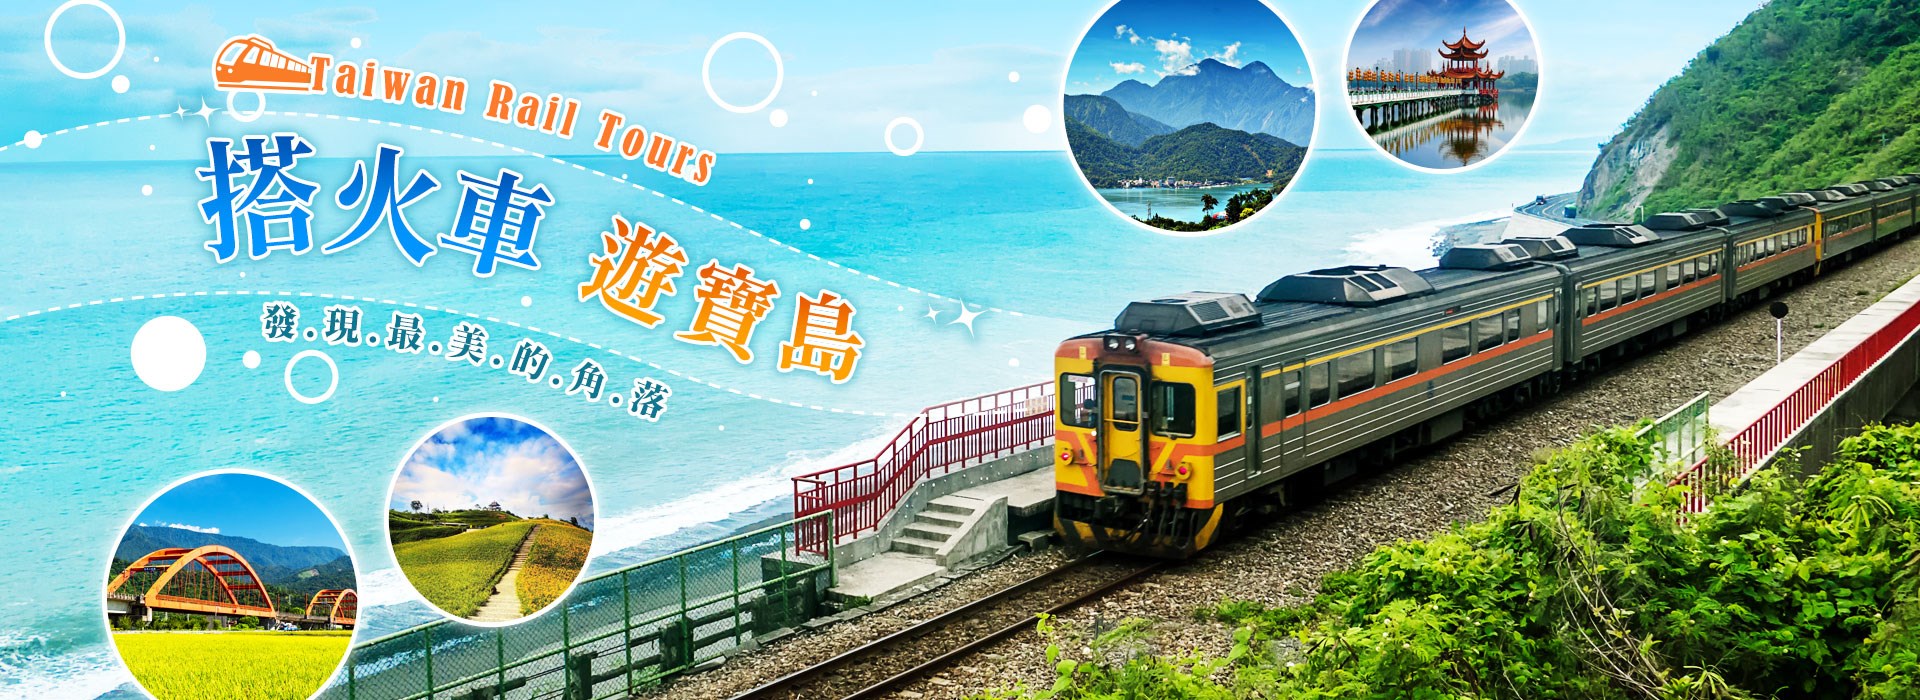 Taiwan Rail Tours